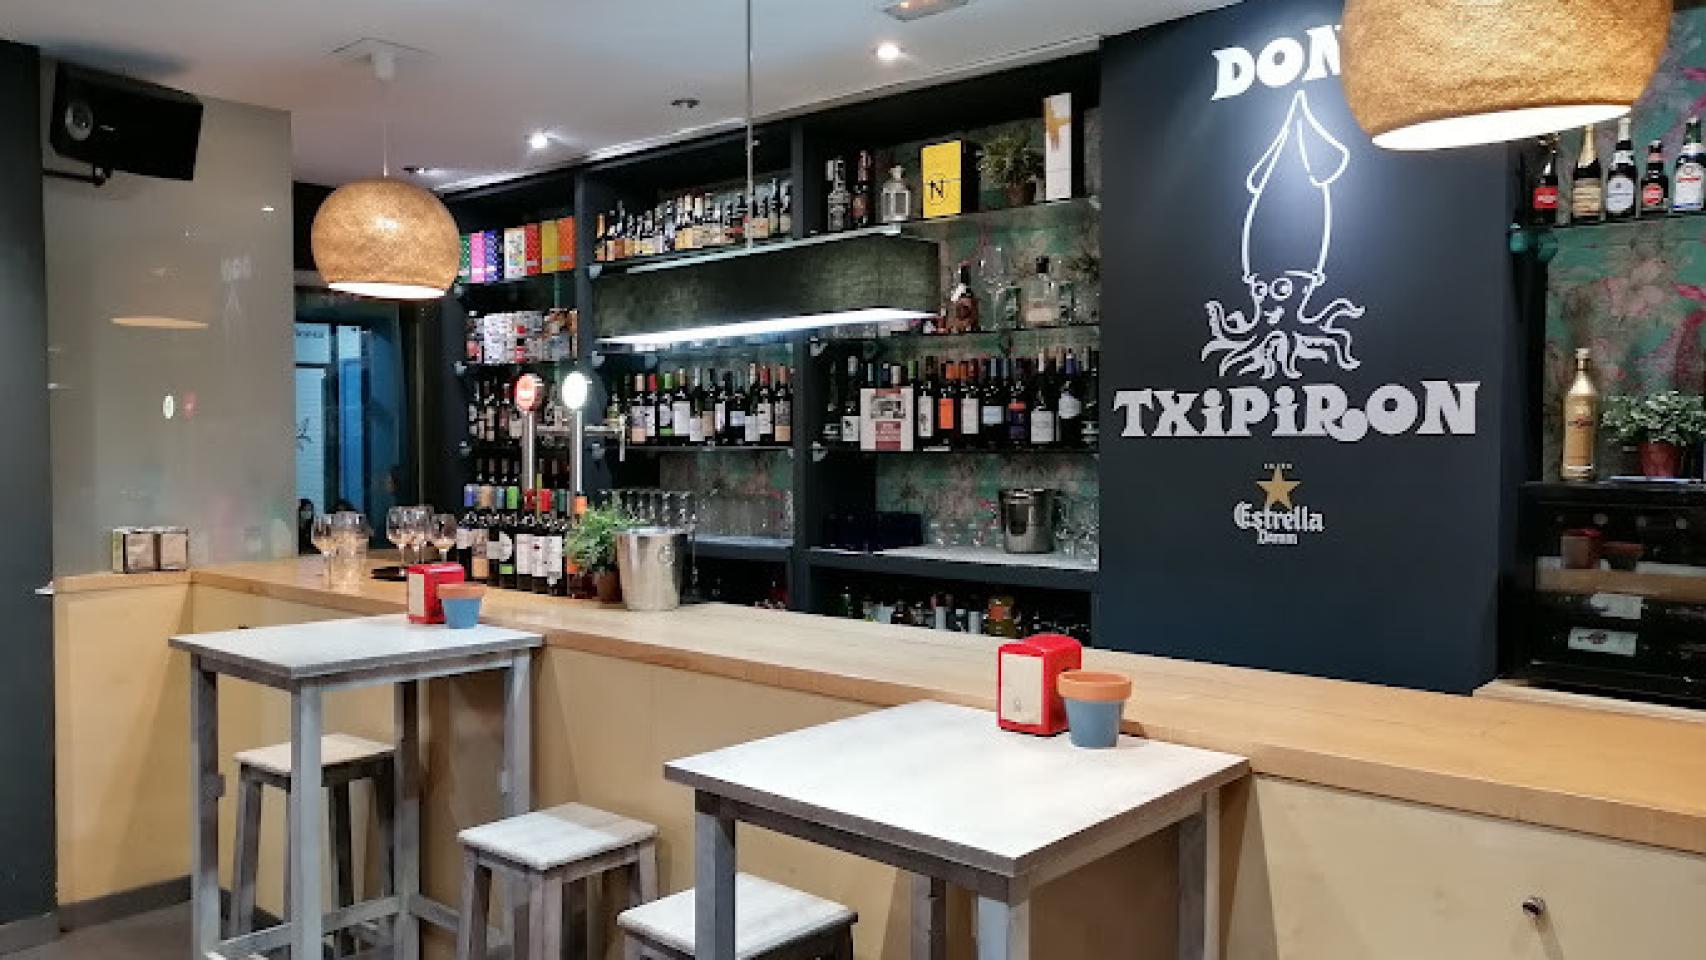 Restaurante Don Txipiron